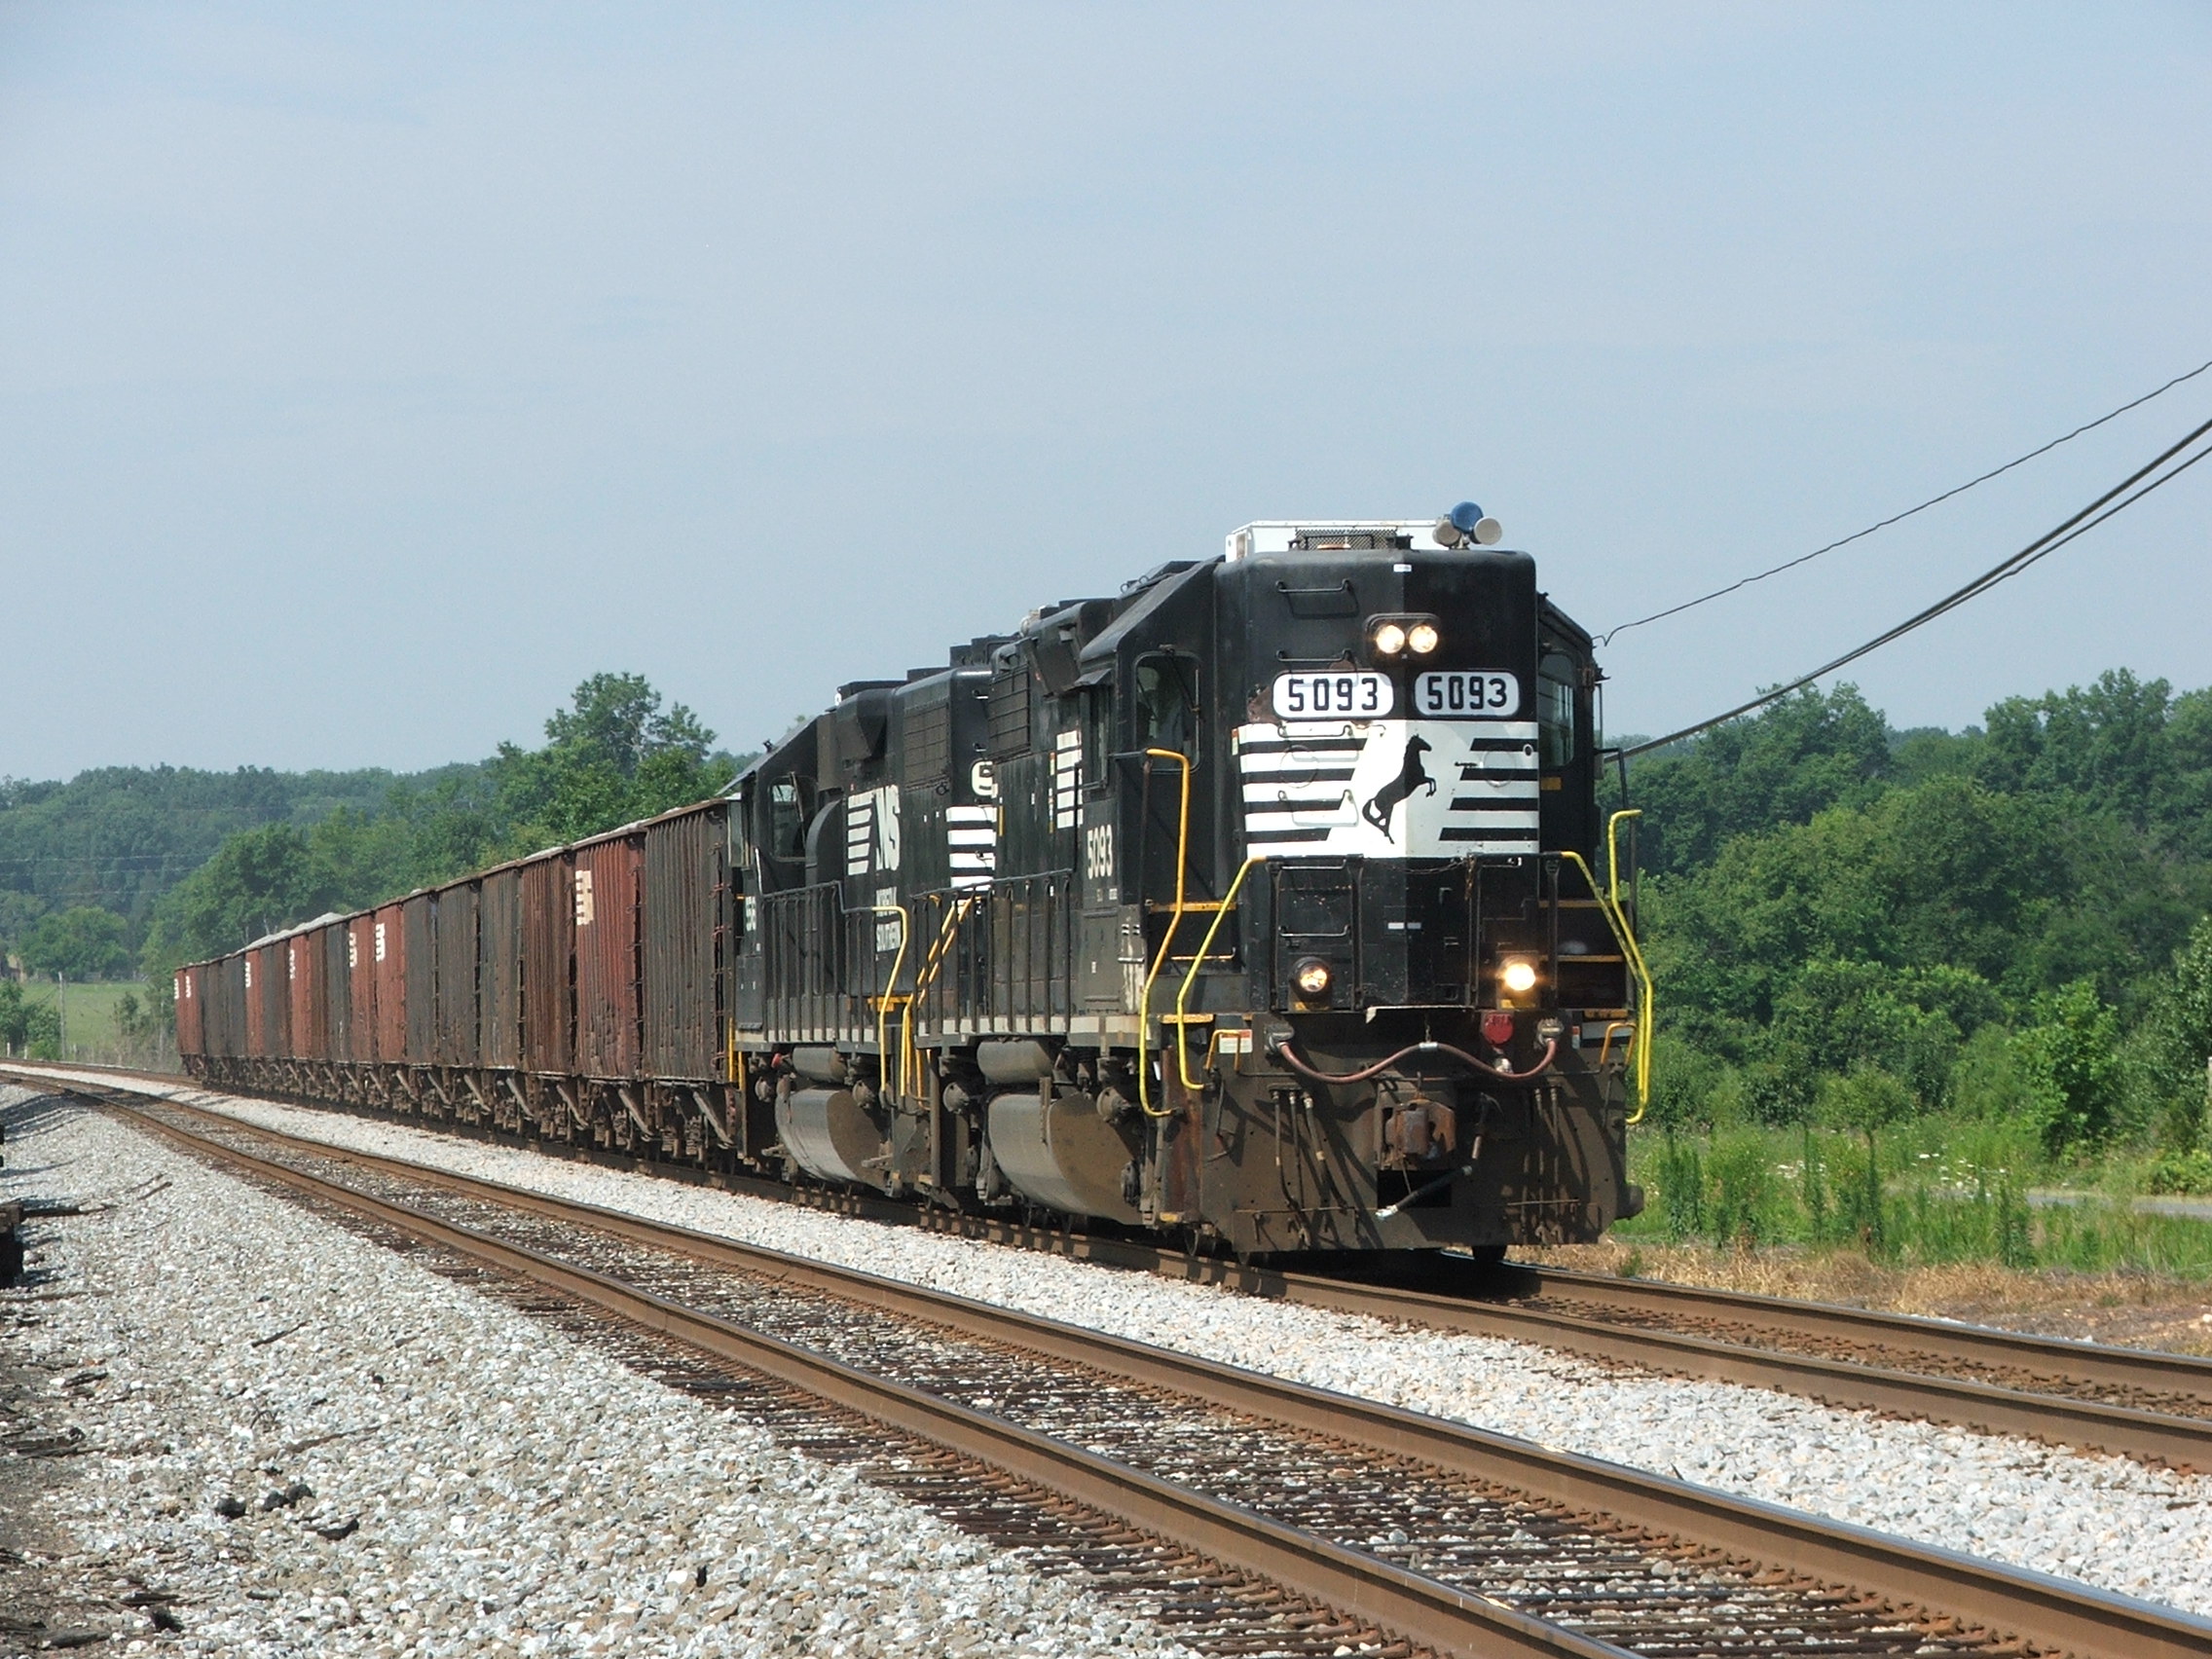 P51 heads north with HH 5093 leading the mini-rock train @ Bealton, VA